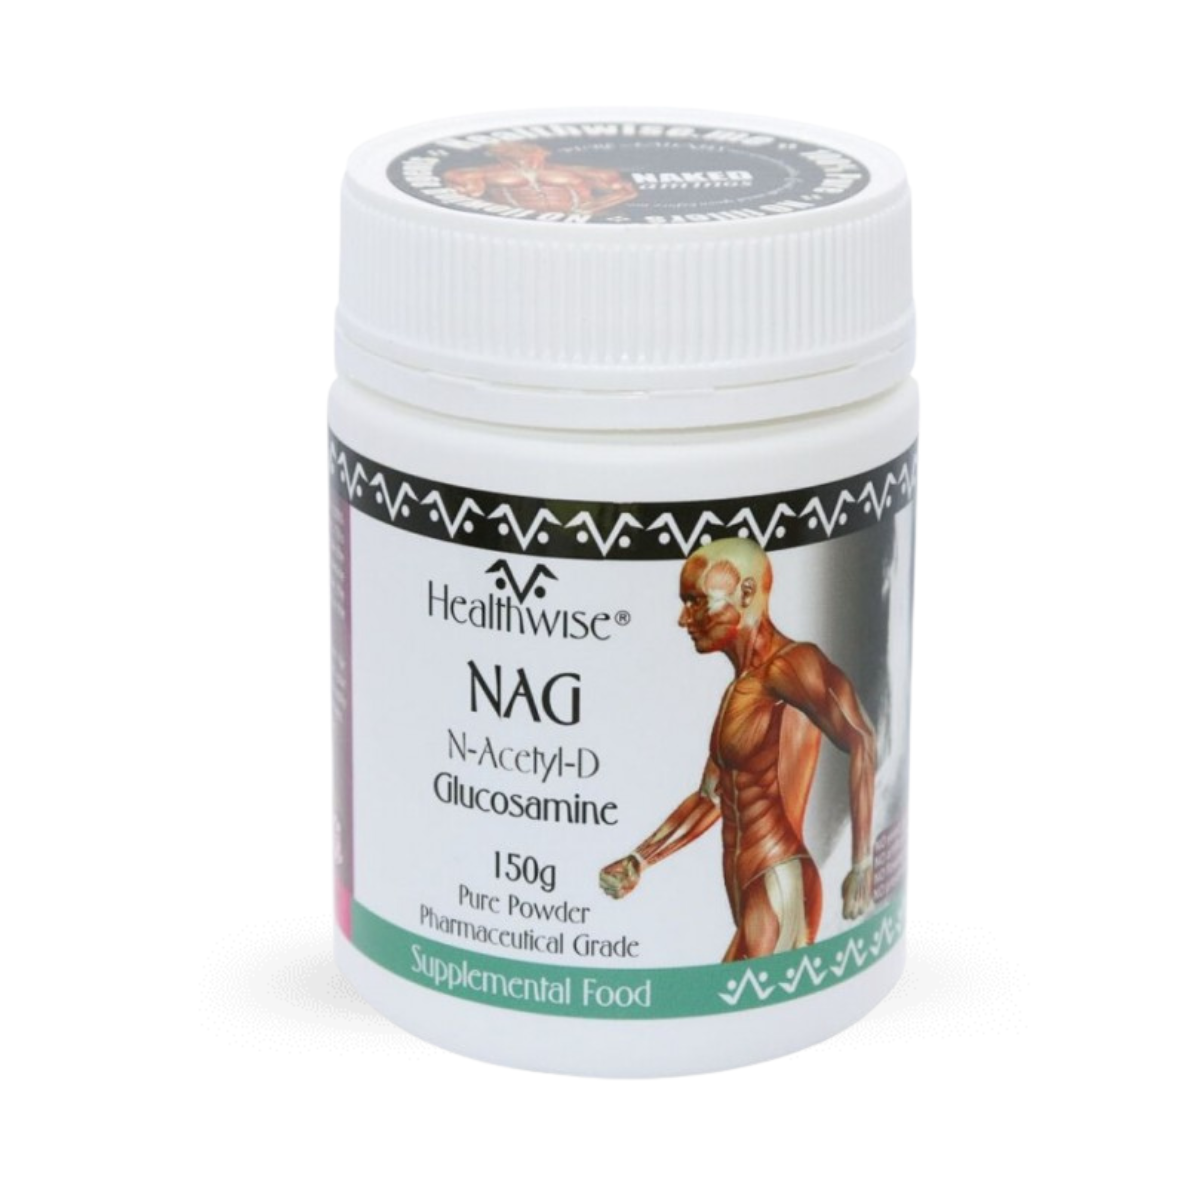 HealthWise NAG: N-Acetyl-D-Glucosamine Powder 150g